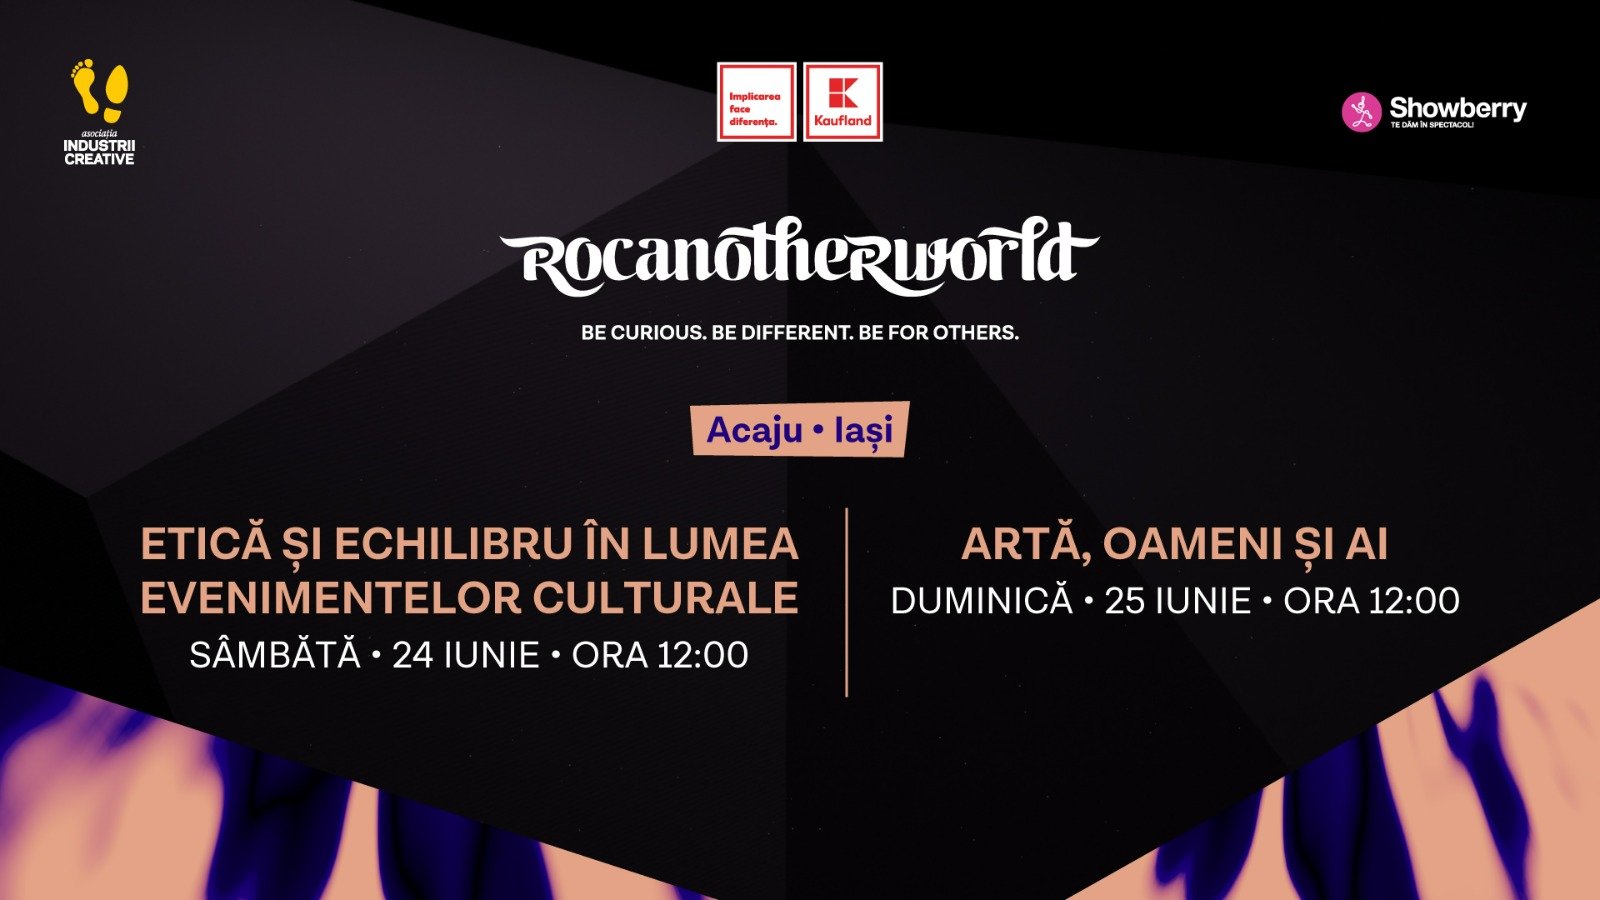  Festival rock cu dezbateri despre muzică, artă, gânduri, oameni şi idei, azi şi mâine la Iaşi: Rocanotherworld, 2023